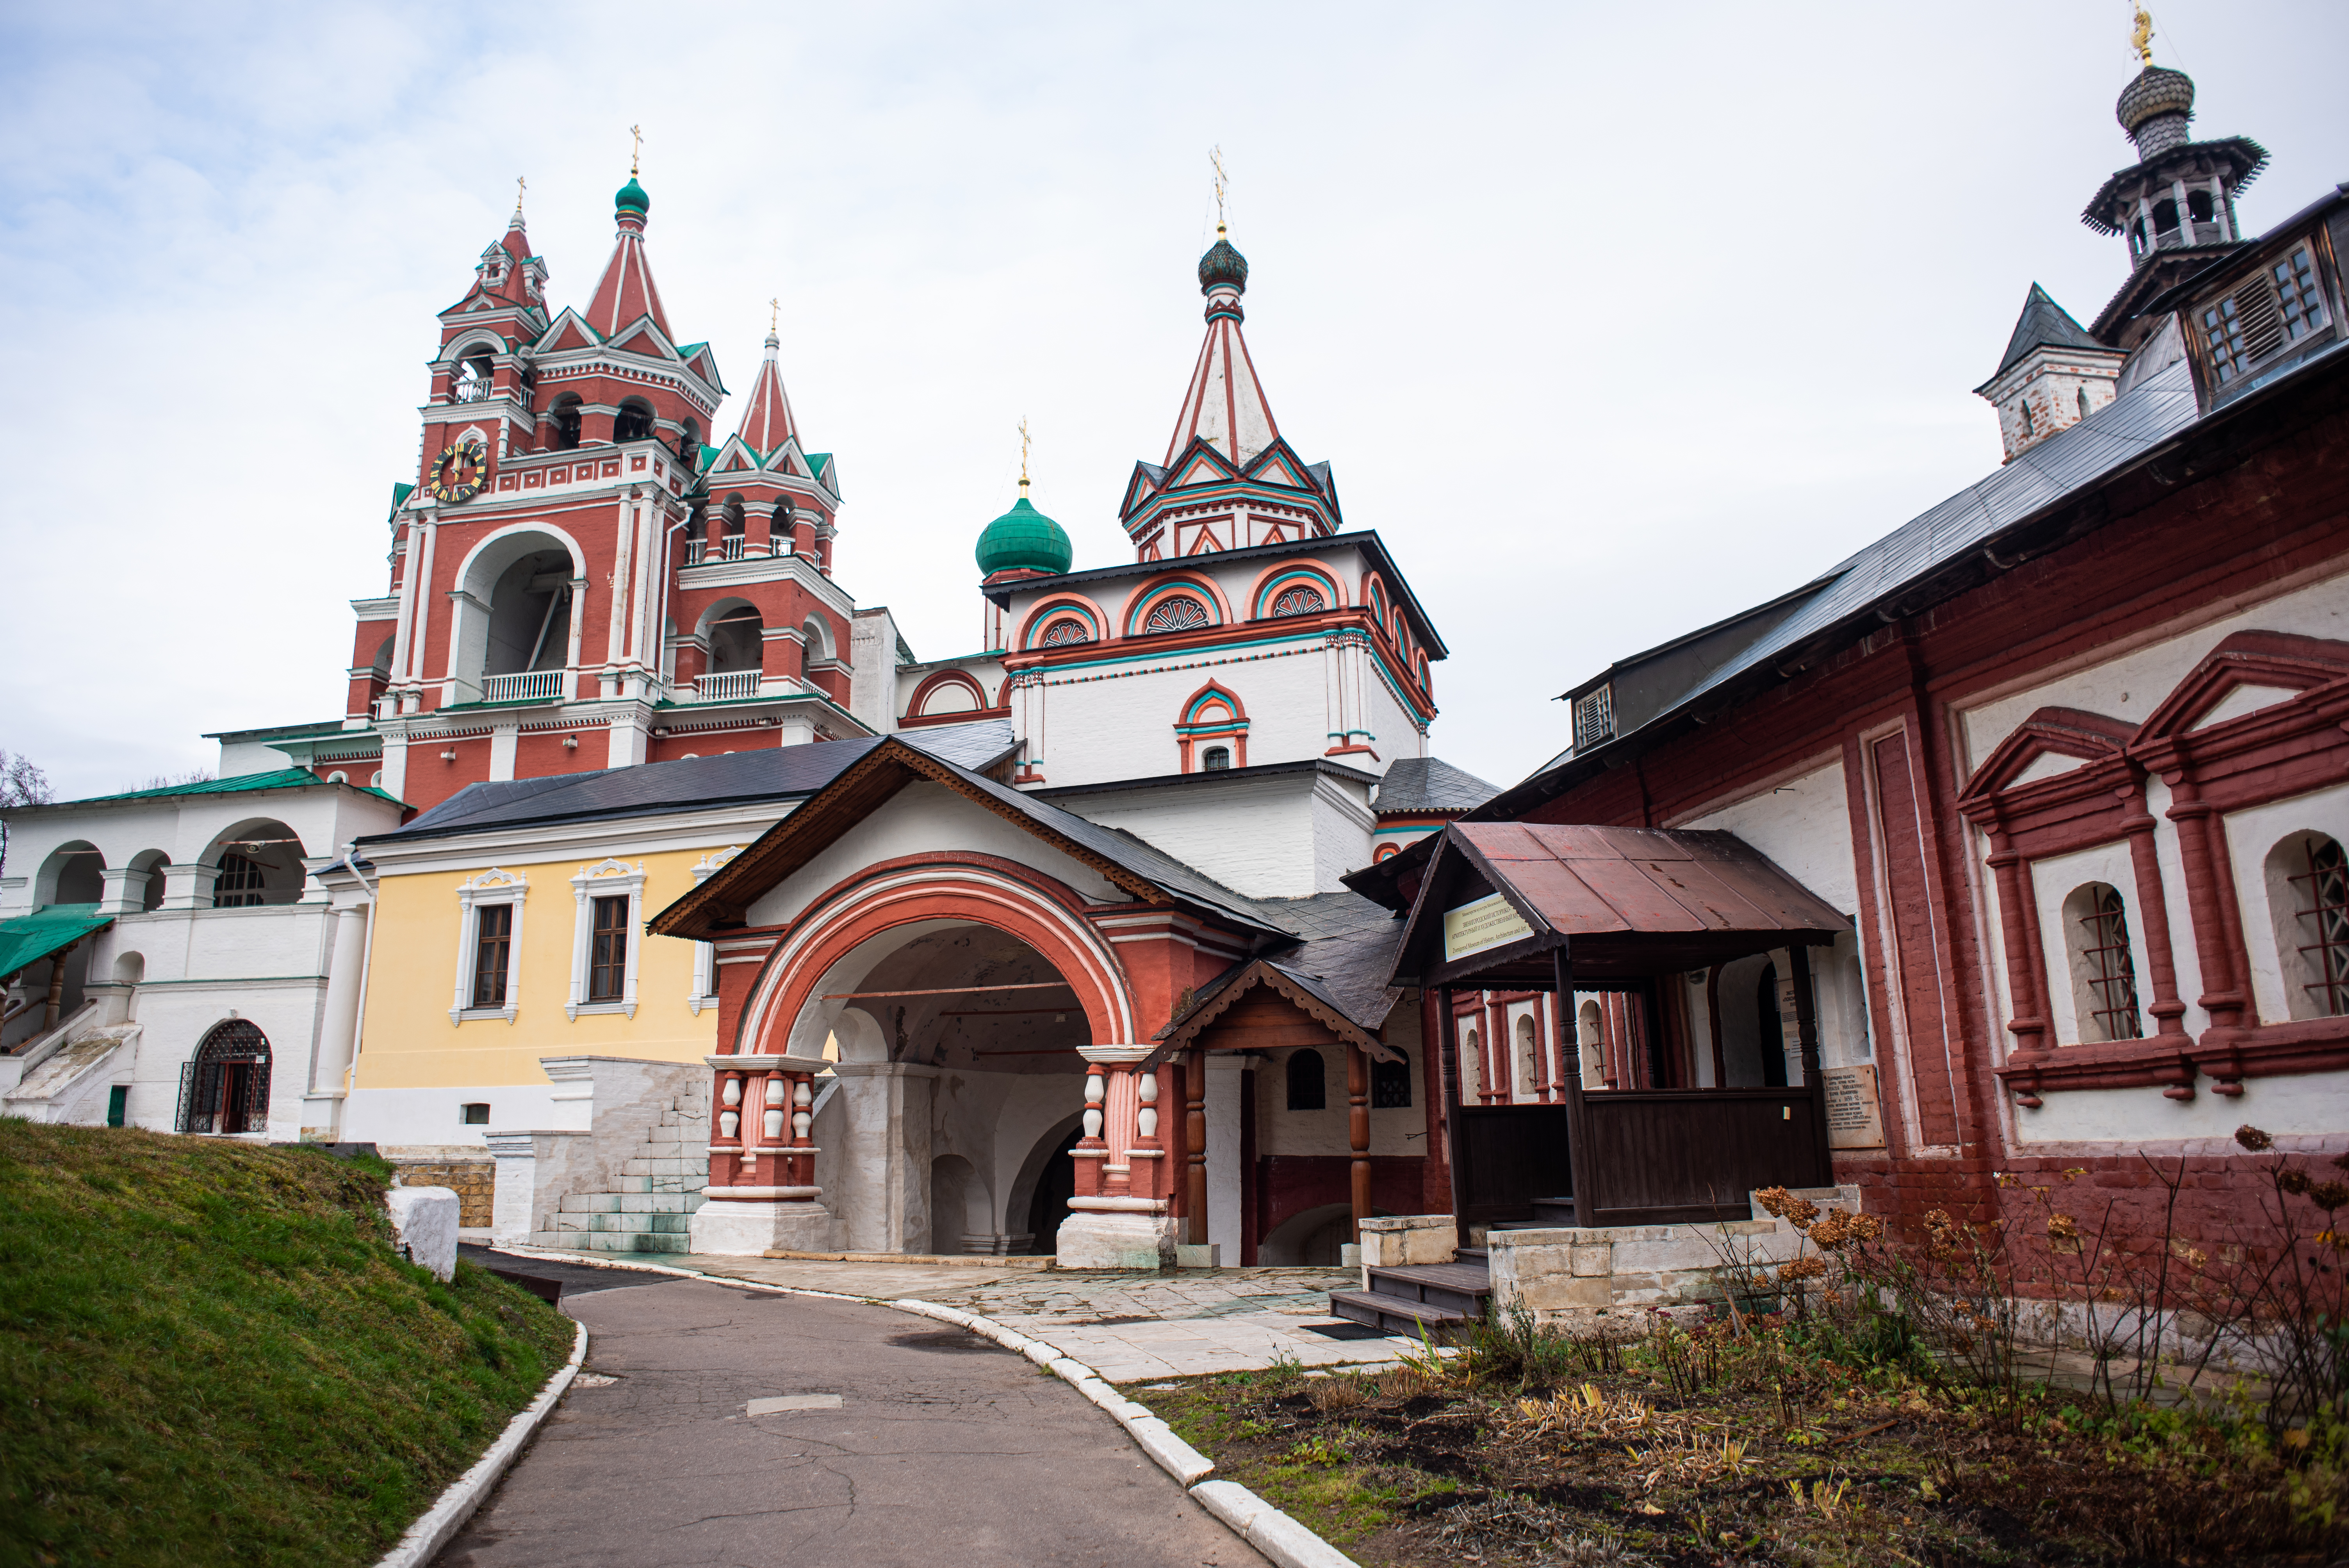 Саввино-Сторожевский монастырь был основан в 1398 году монахом Саввой, учеником преподобного Сергия Радонежского